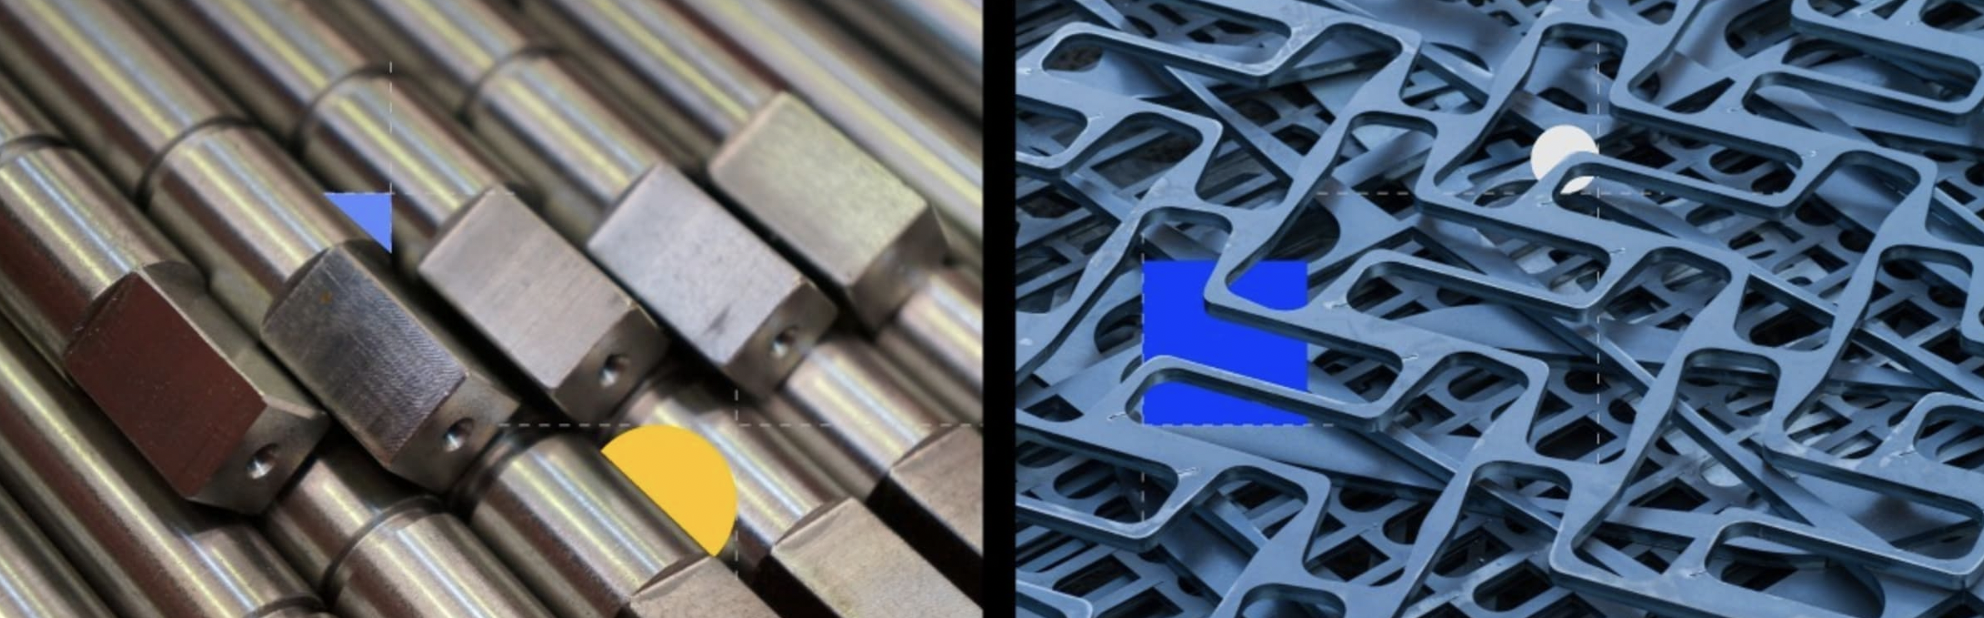 cnc machining vs sheet metal